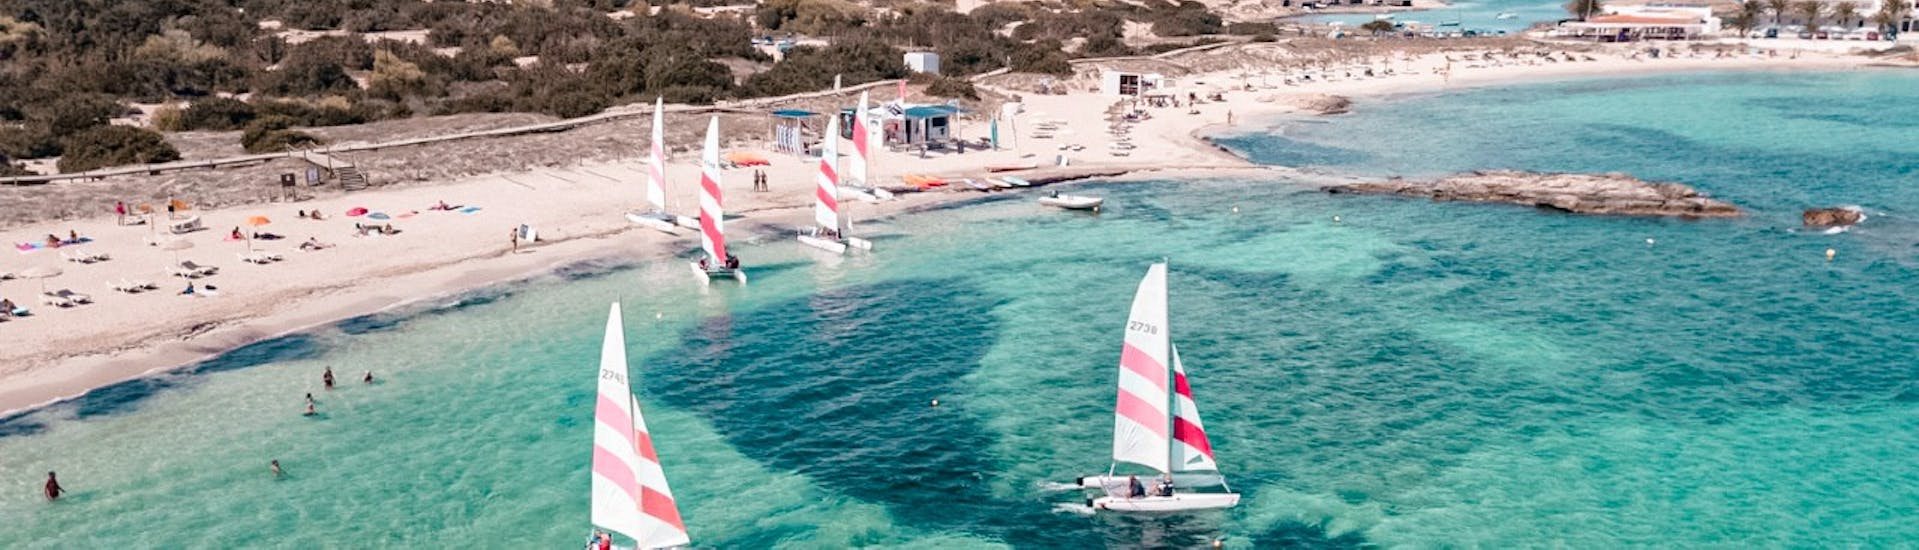 Location de bateaux à voile à Formentera (jusqu'à 3 personnes) sans permis.